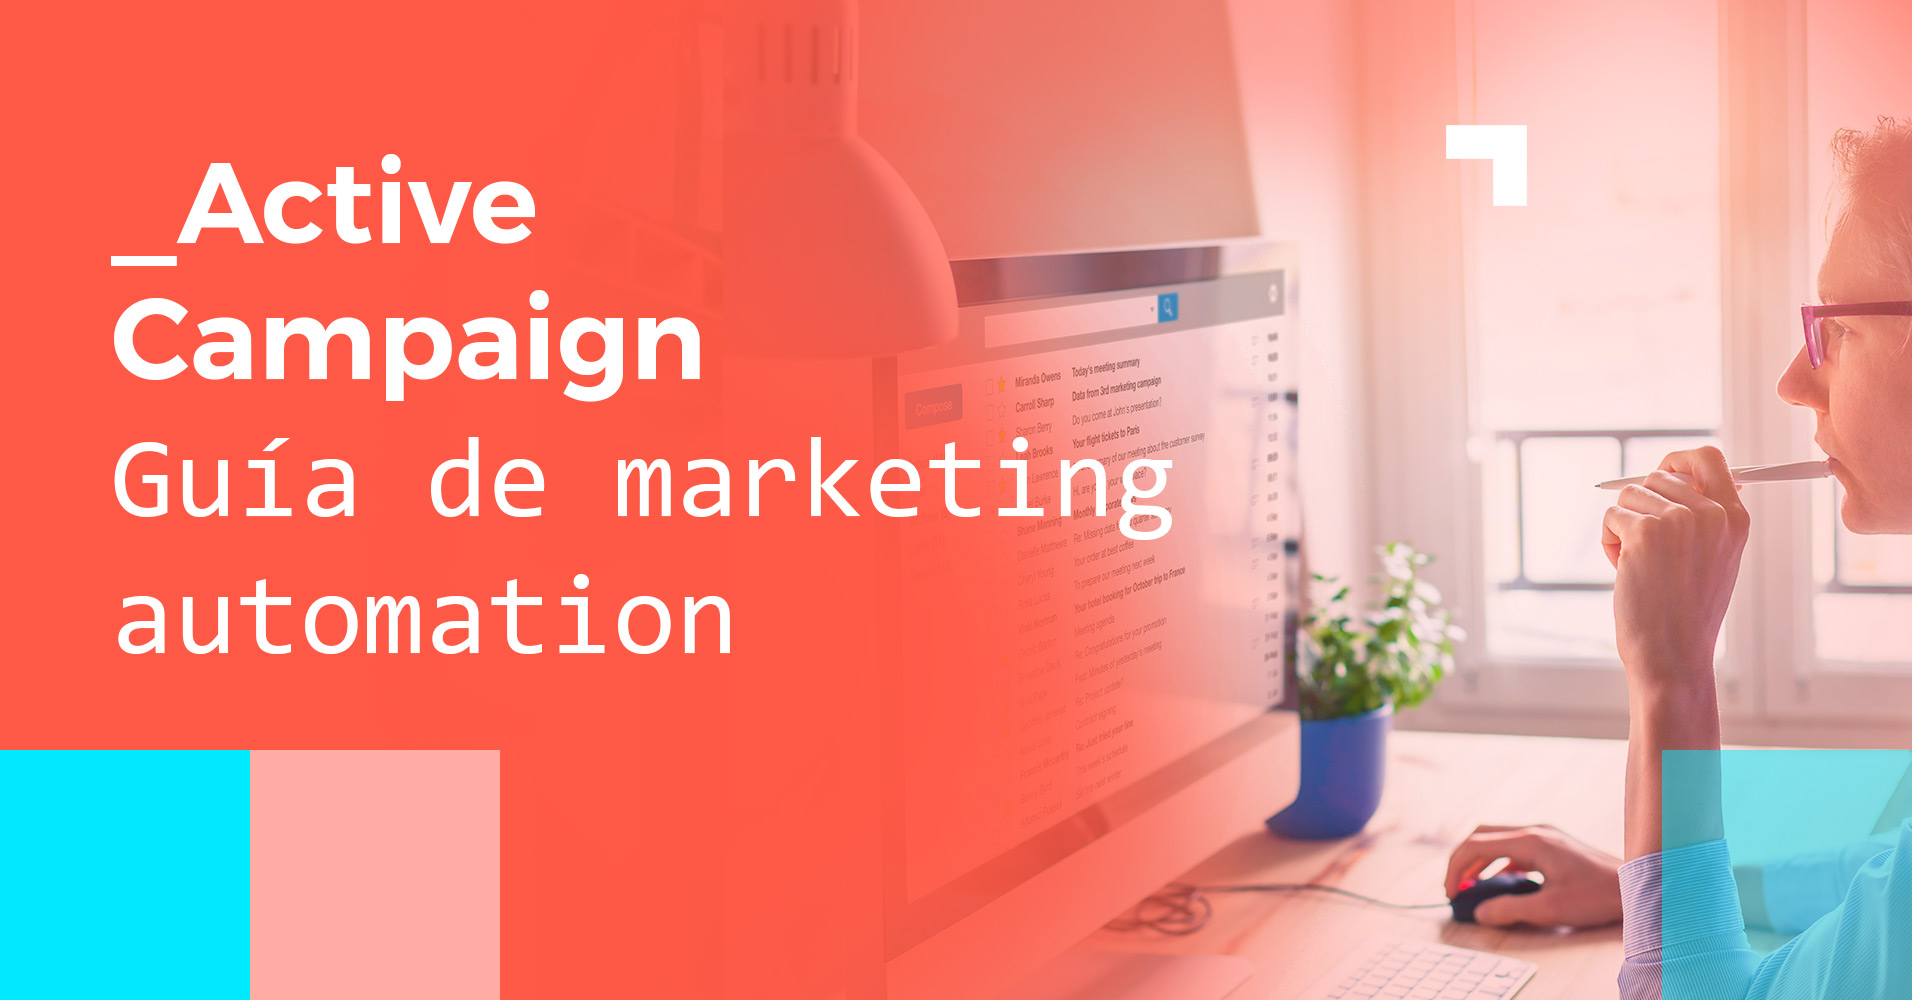 Active Campaign - Guía de marketing automation